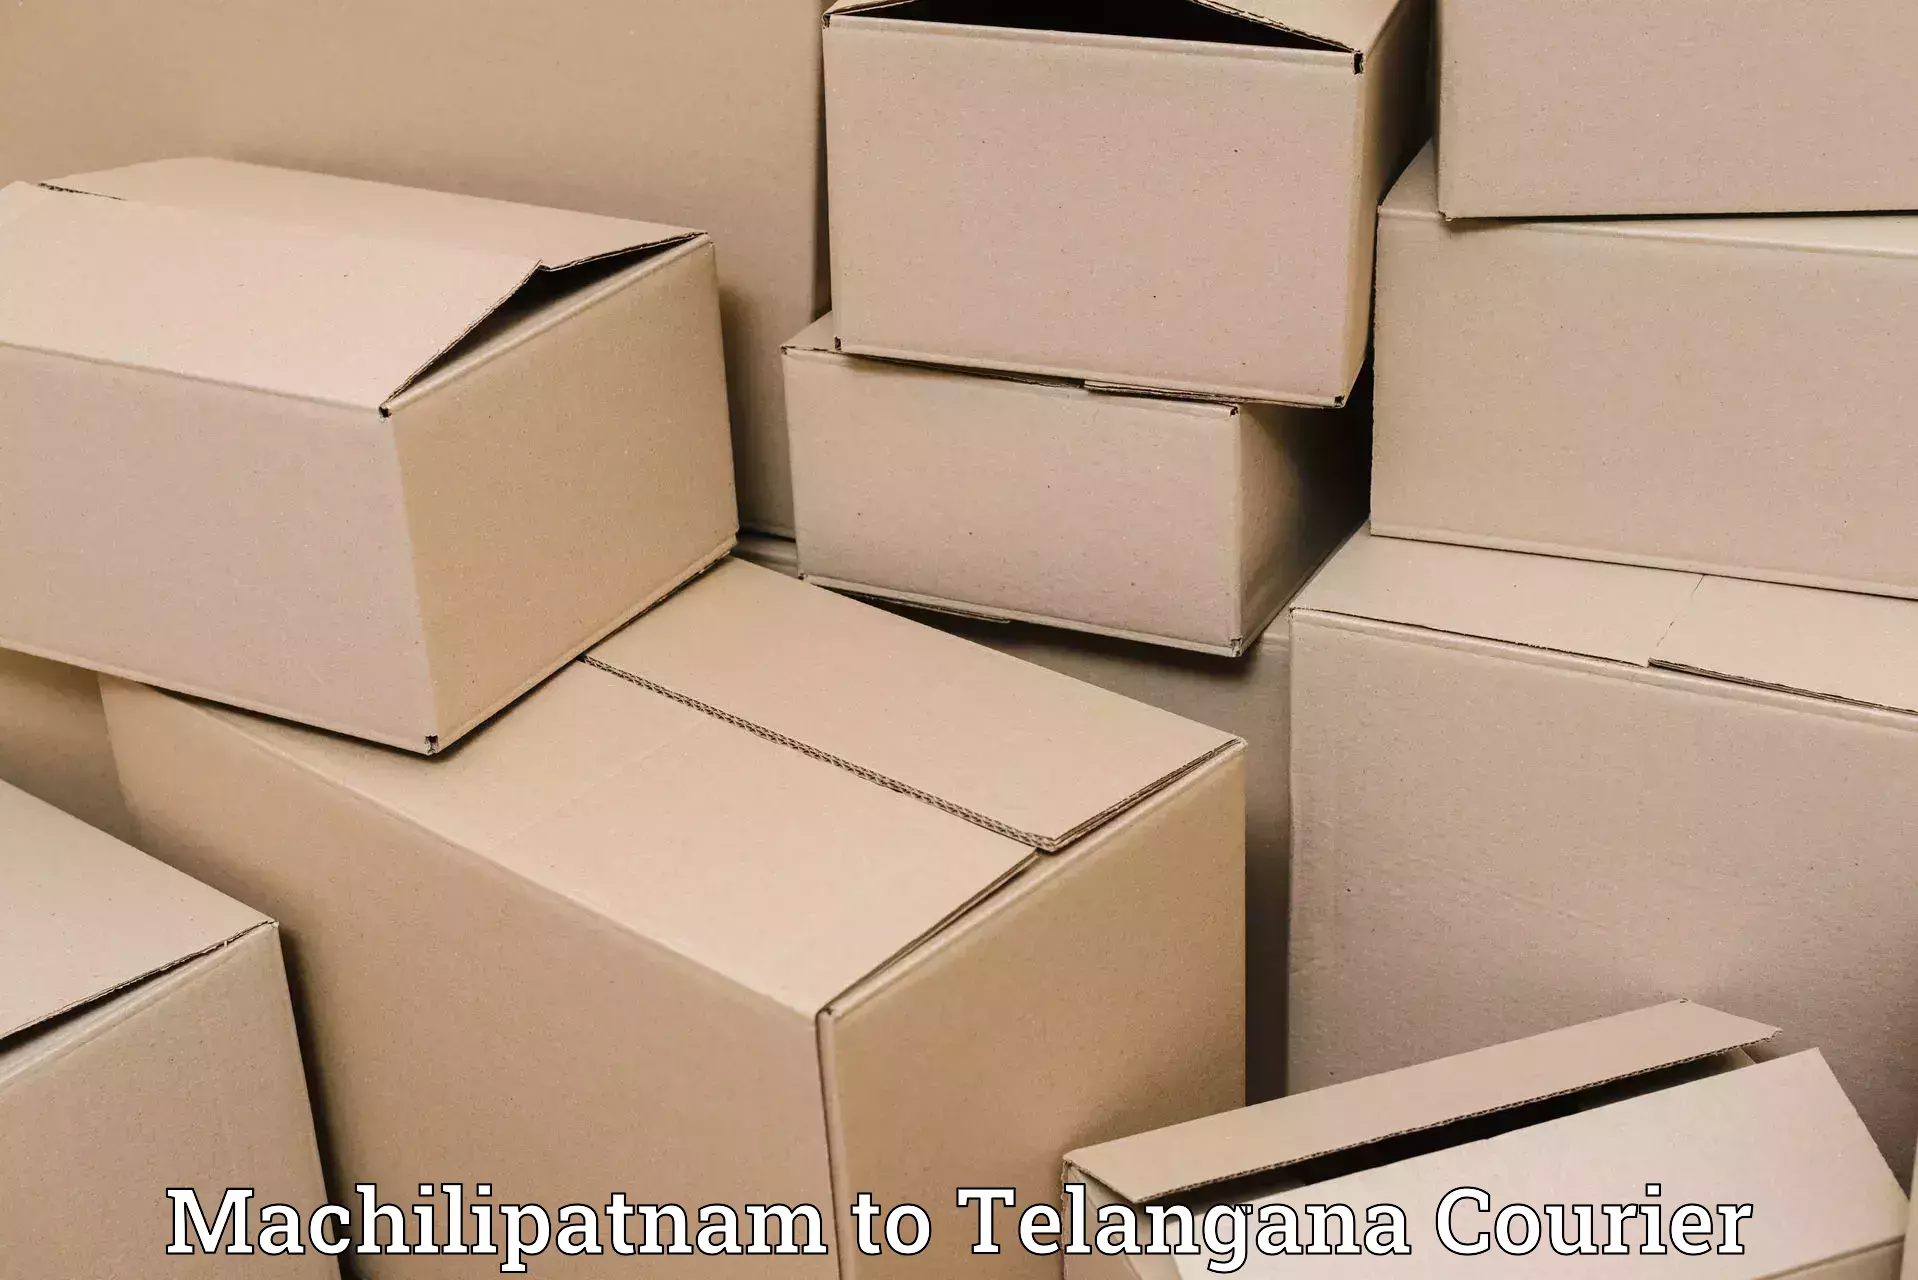 Urgent courier needs Machilipatnam to Yellareddy